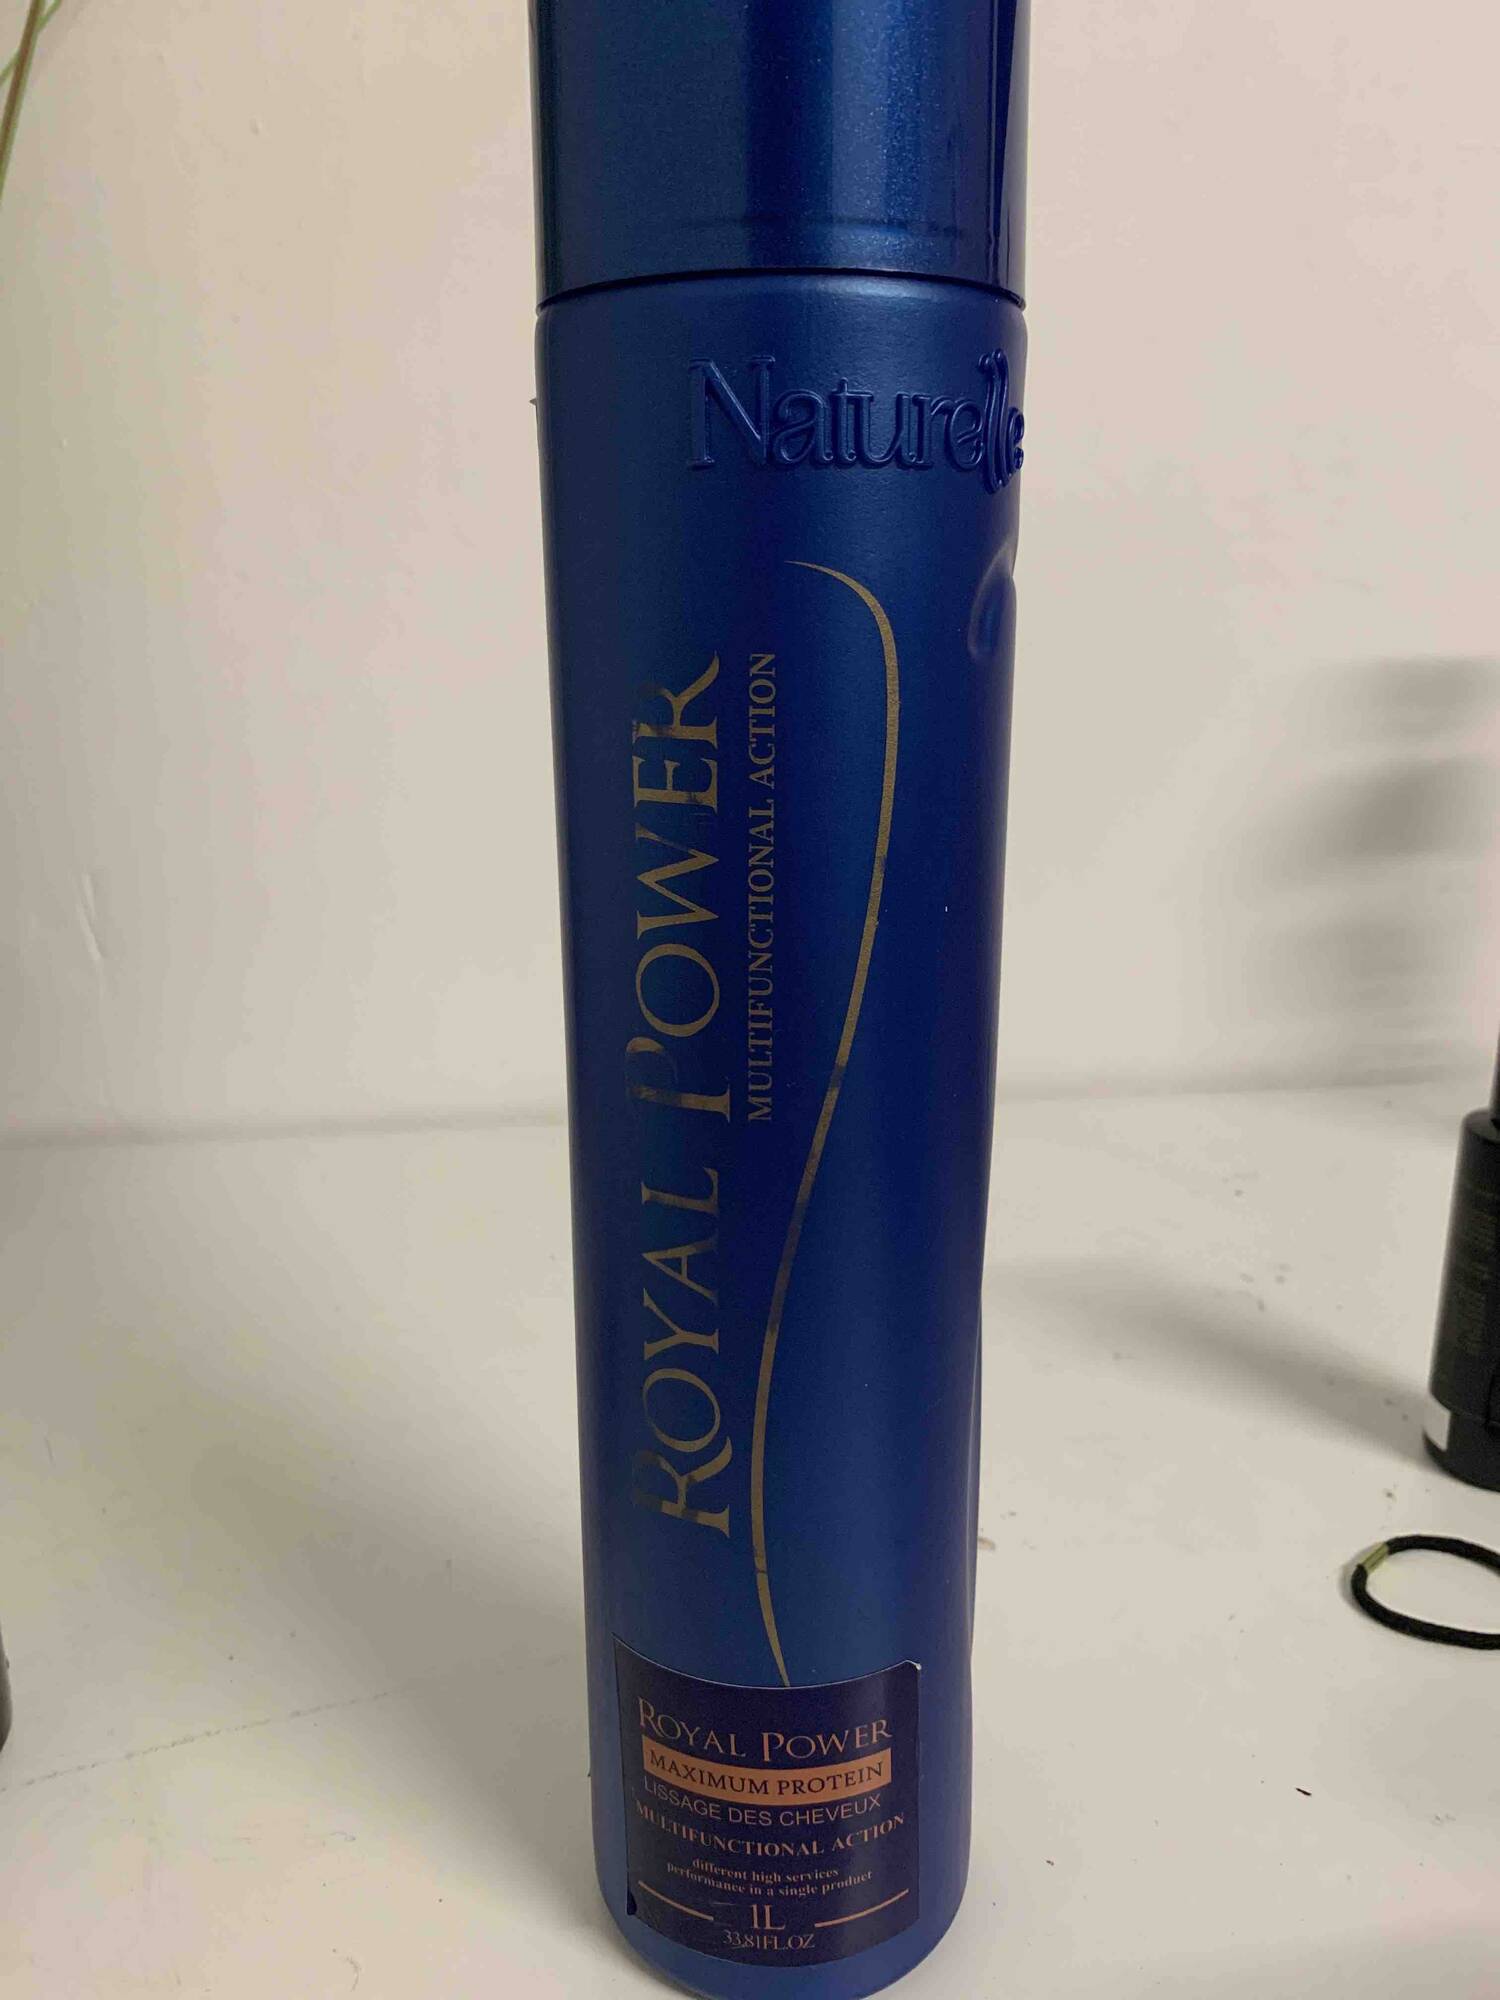 NATURELLE - Royal power - Lissage des cheveux